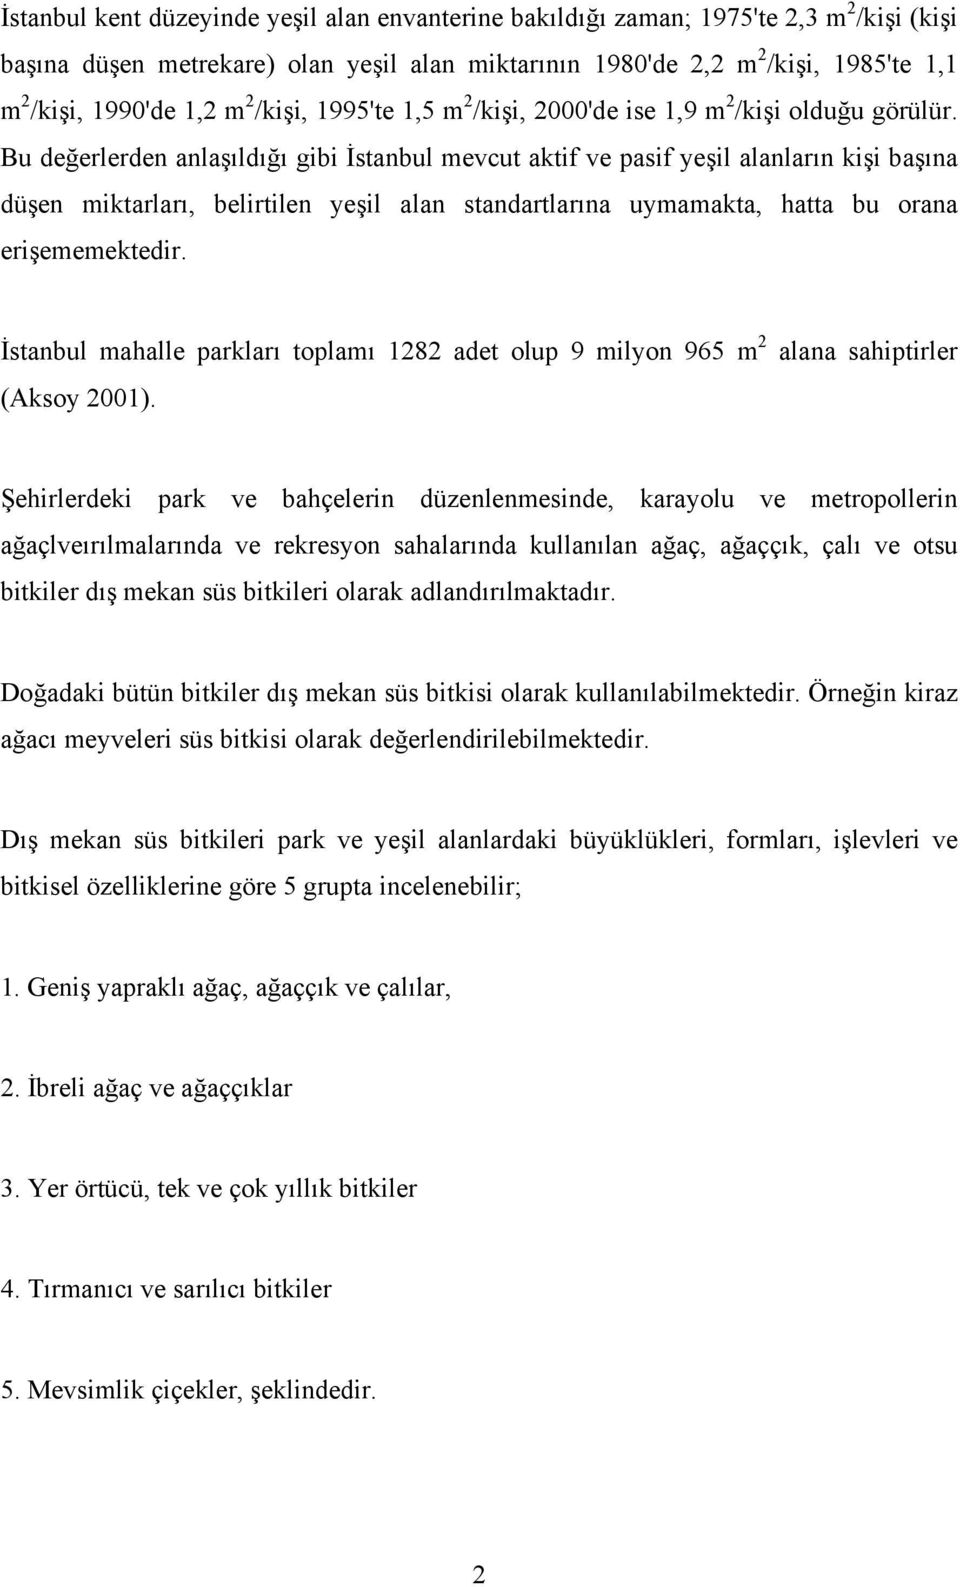 Bu değerlerden anlaşıldığı gibi İstanbul mevcut aktif ve pasif yeşil alanların kişi başına düşen miktarları, belirtilen yeşil alan standartlarına uymamakta, hatta bu orana erişememektedir.